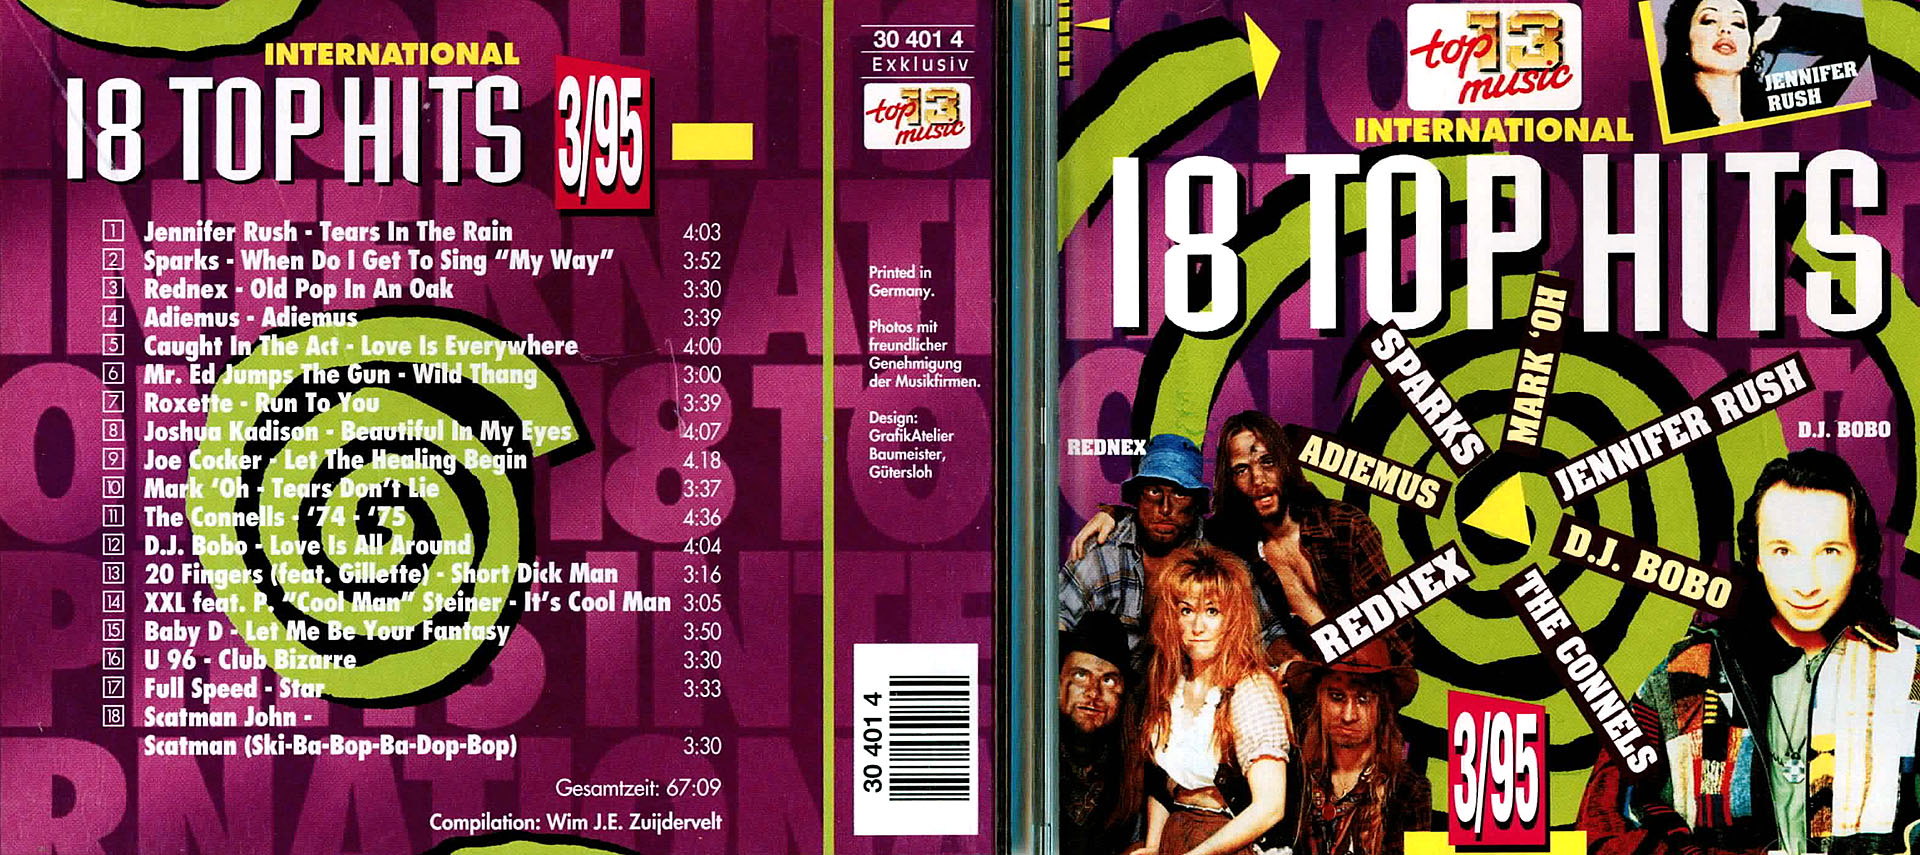 18 Top Hits aus den Charts 3/95 - Jennifer Rush / Sparks / Rednex / Roxette u.v.a.m